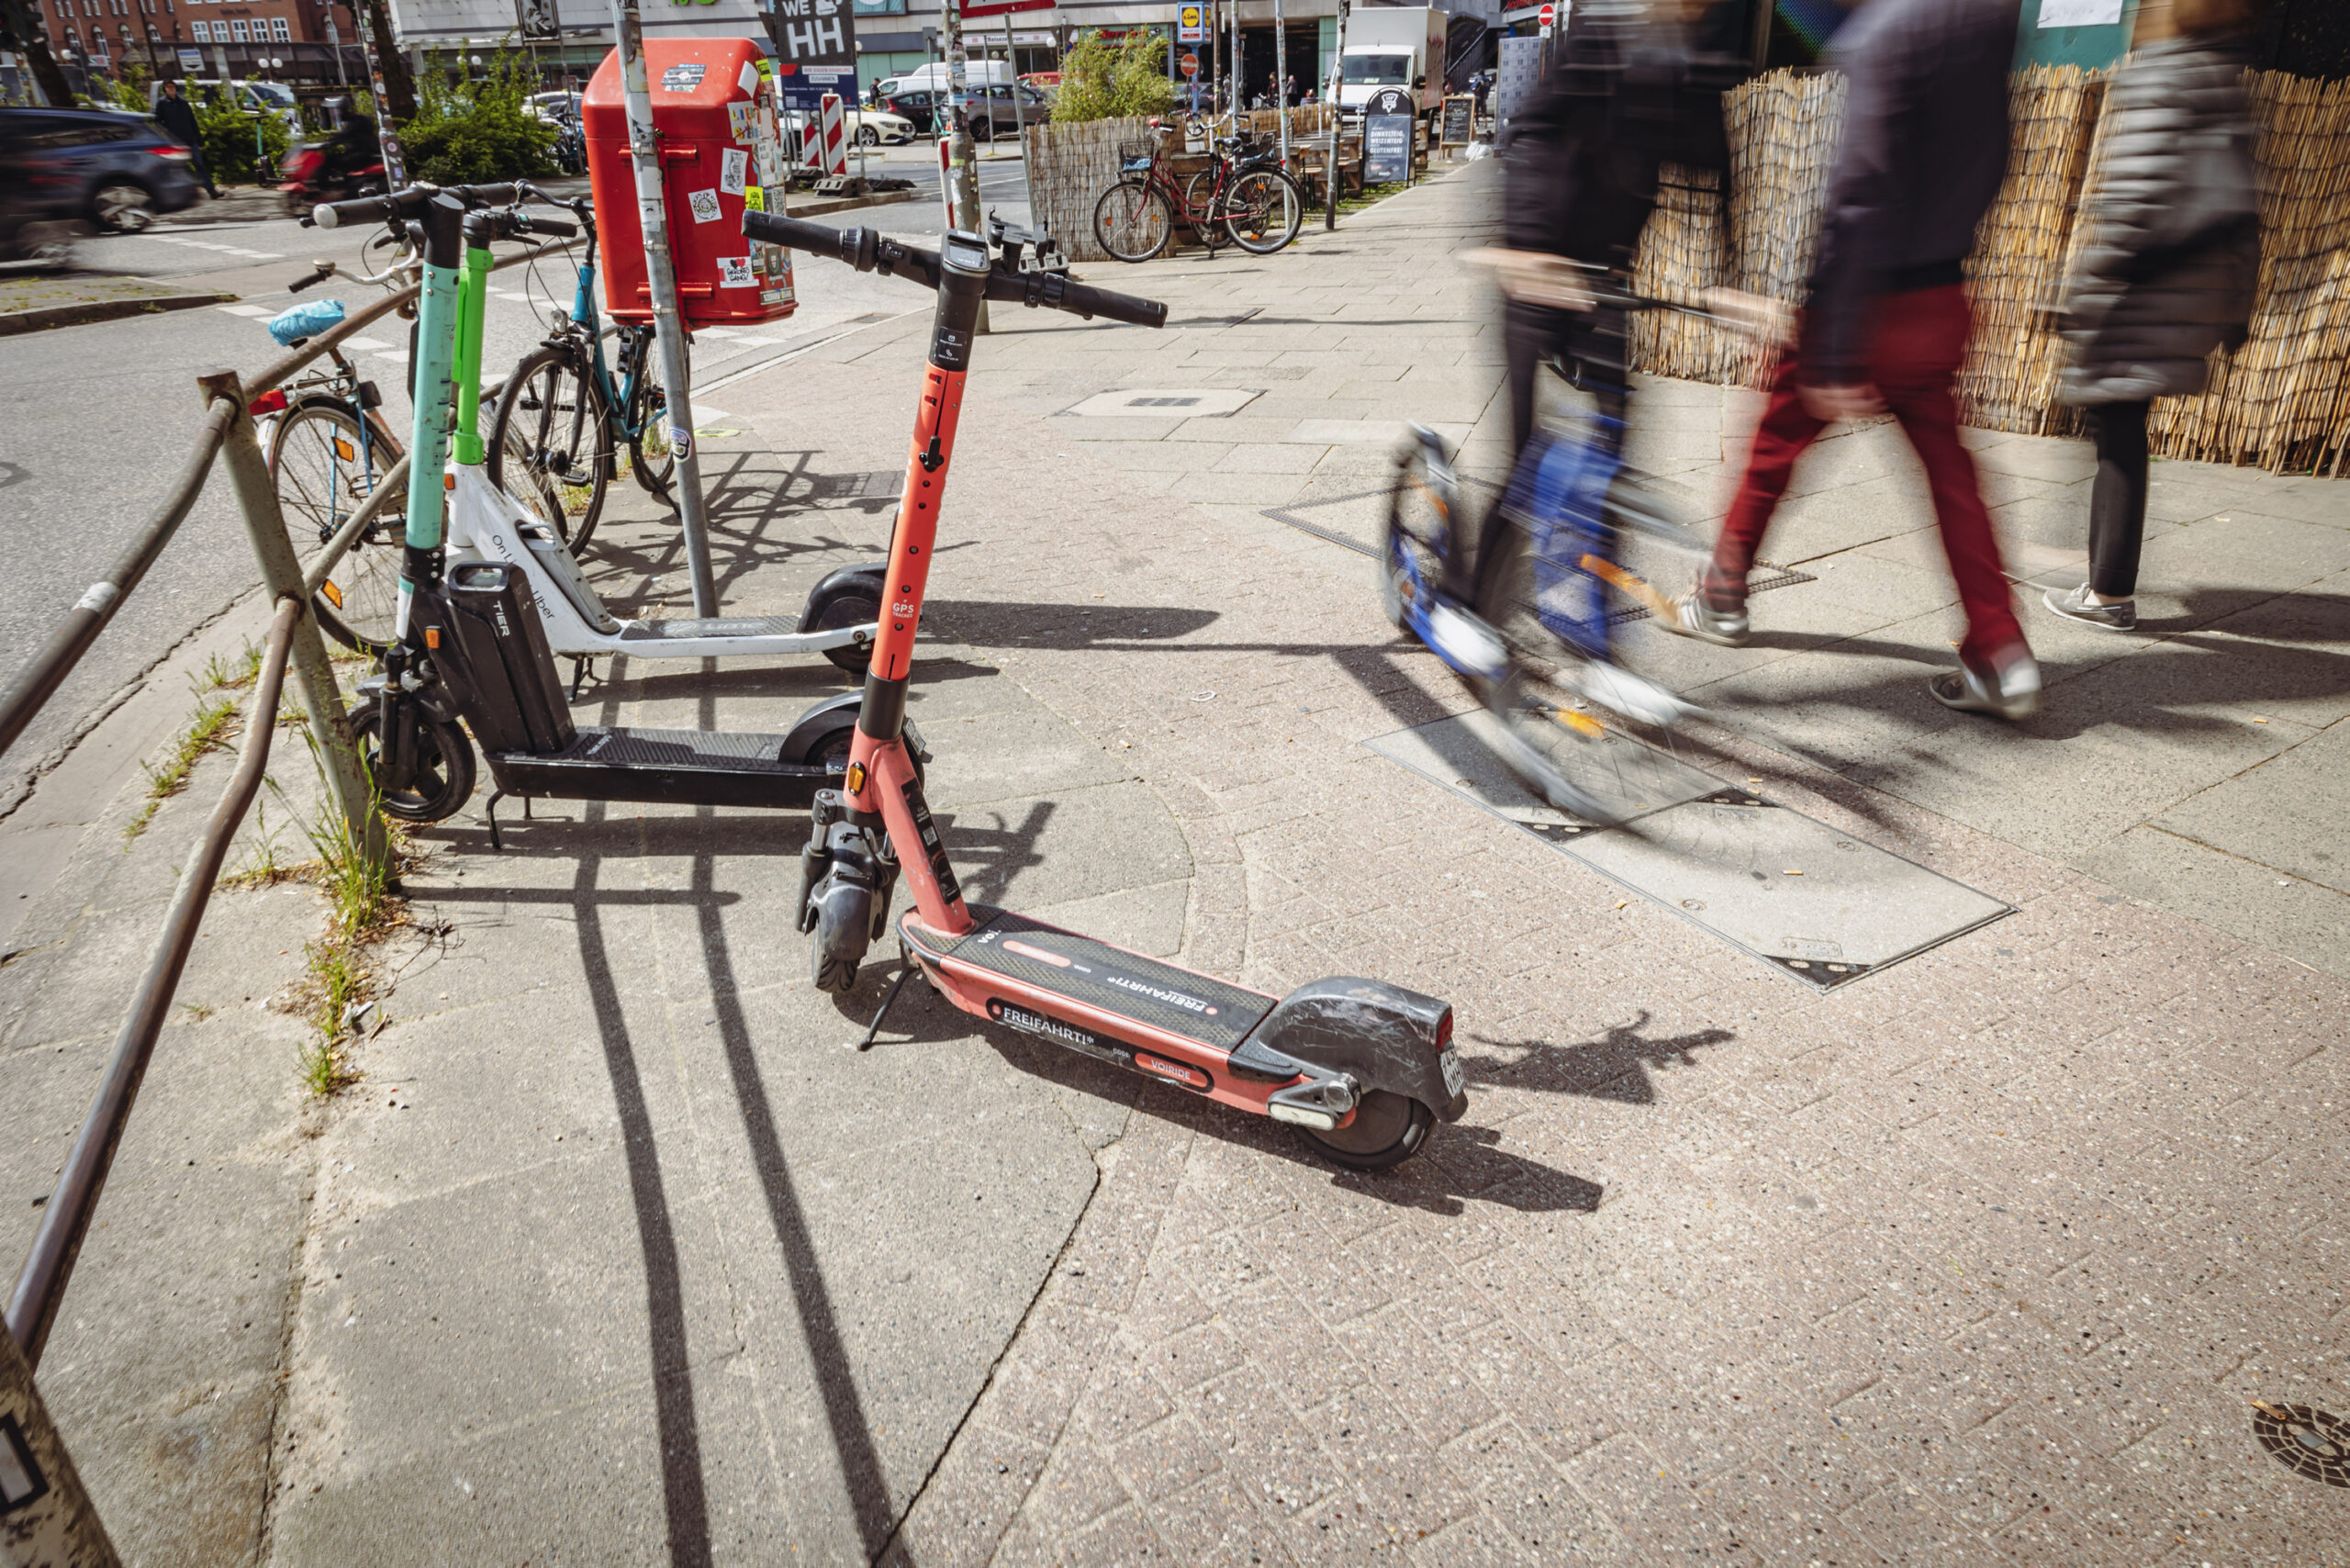 Seit 2019 gibt es die E-Scooter in Hamburg zum Ausleihen – inzwischen sind 16.000 davon in der Stadt unterwegs.